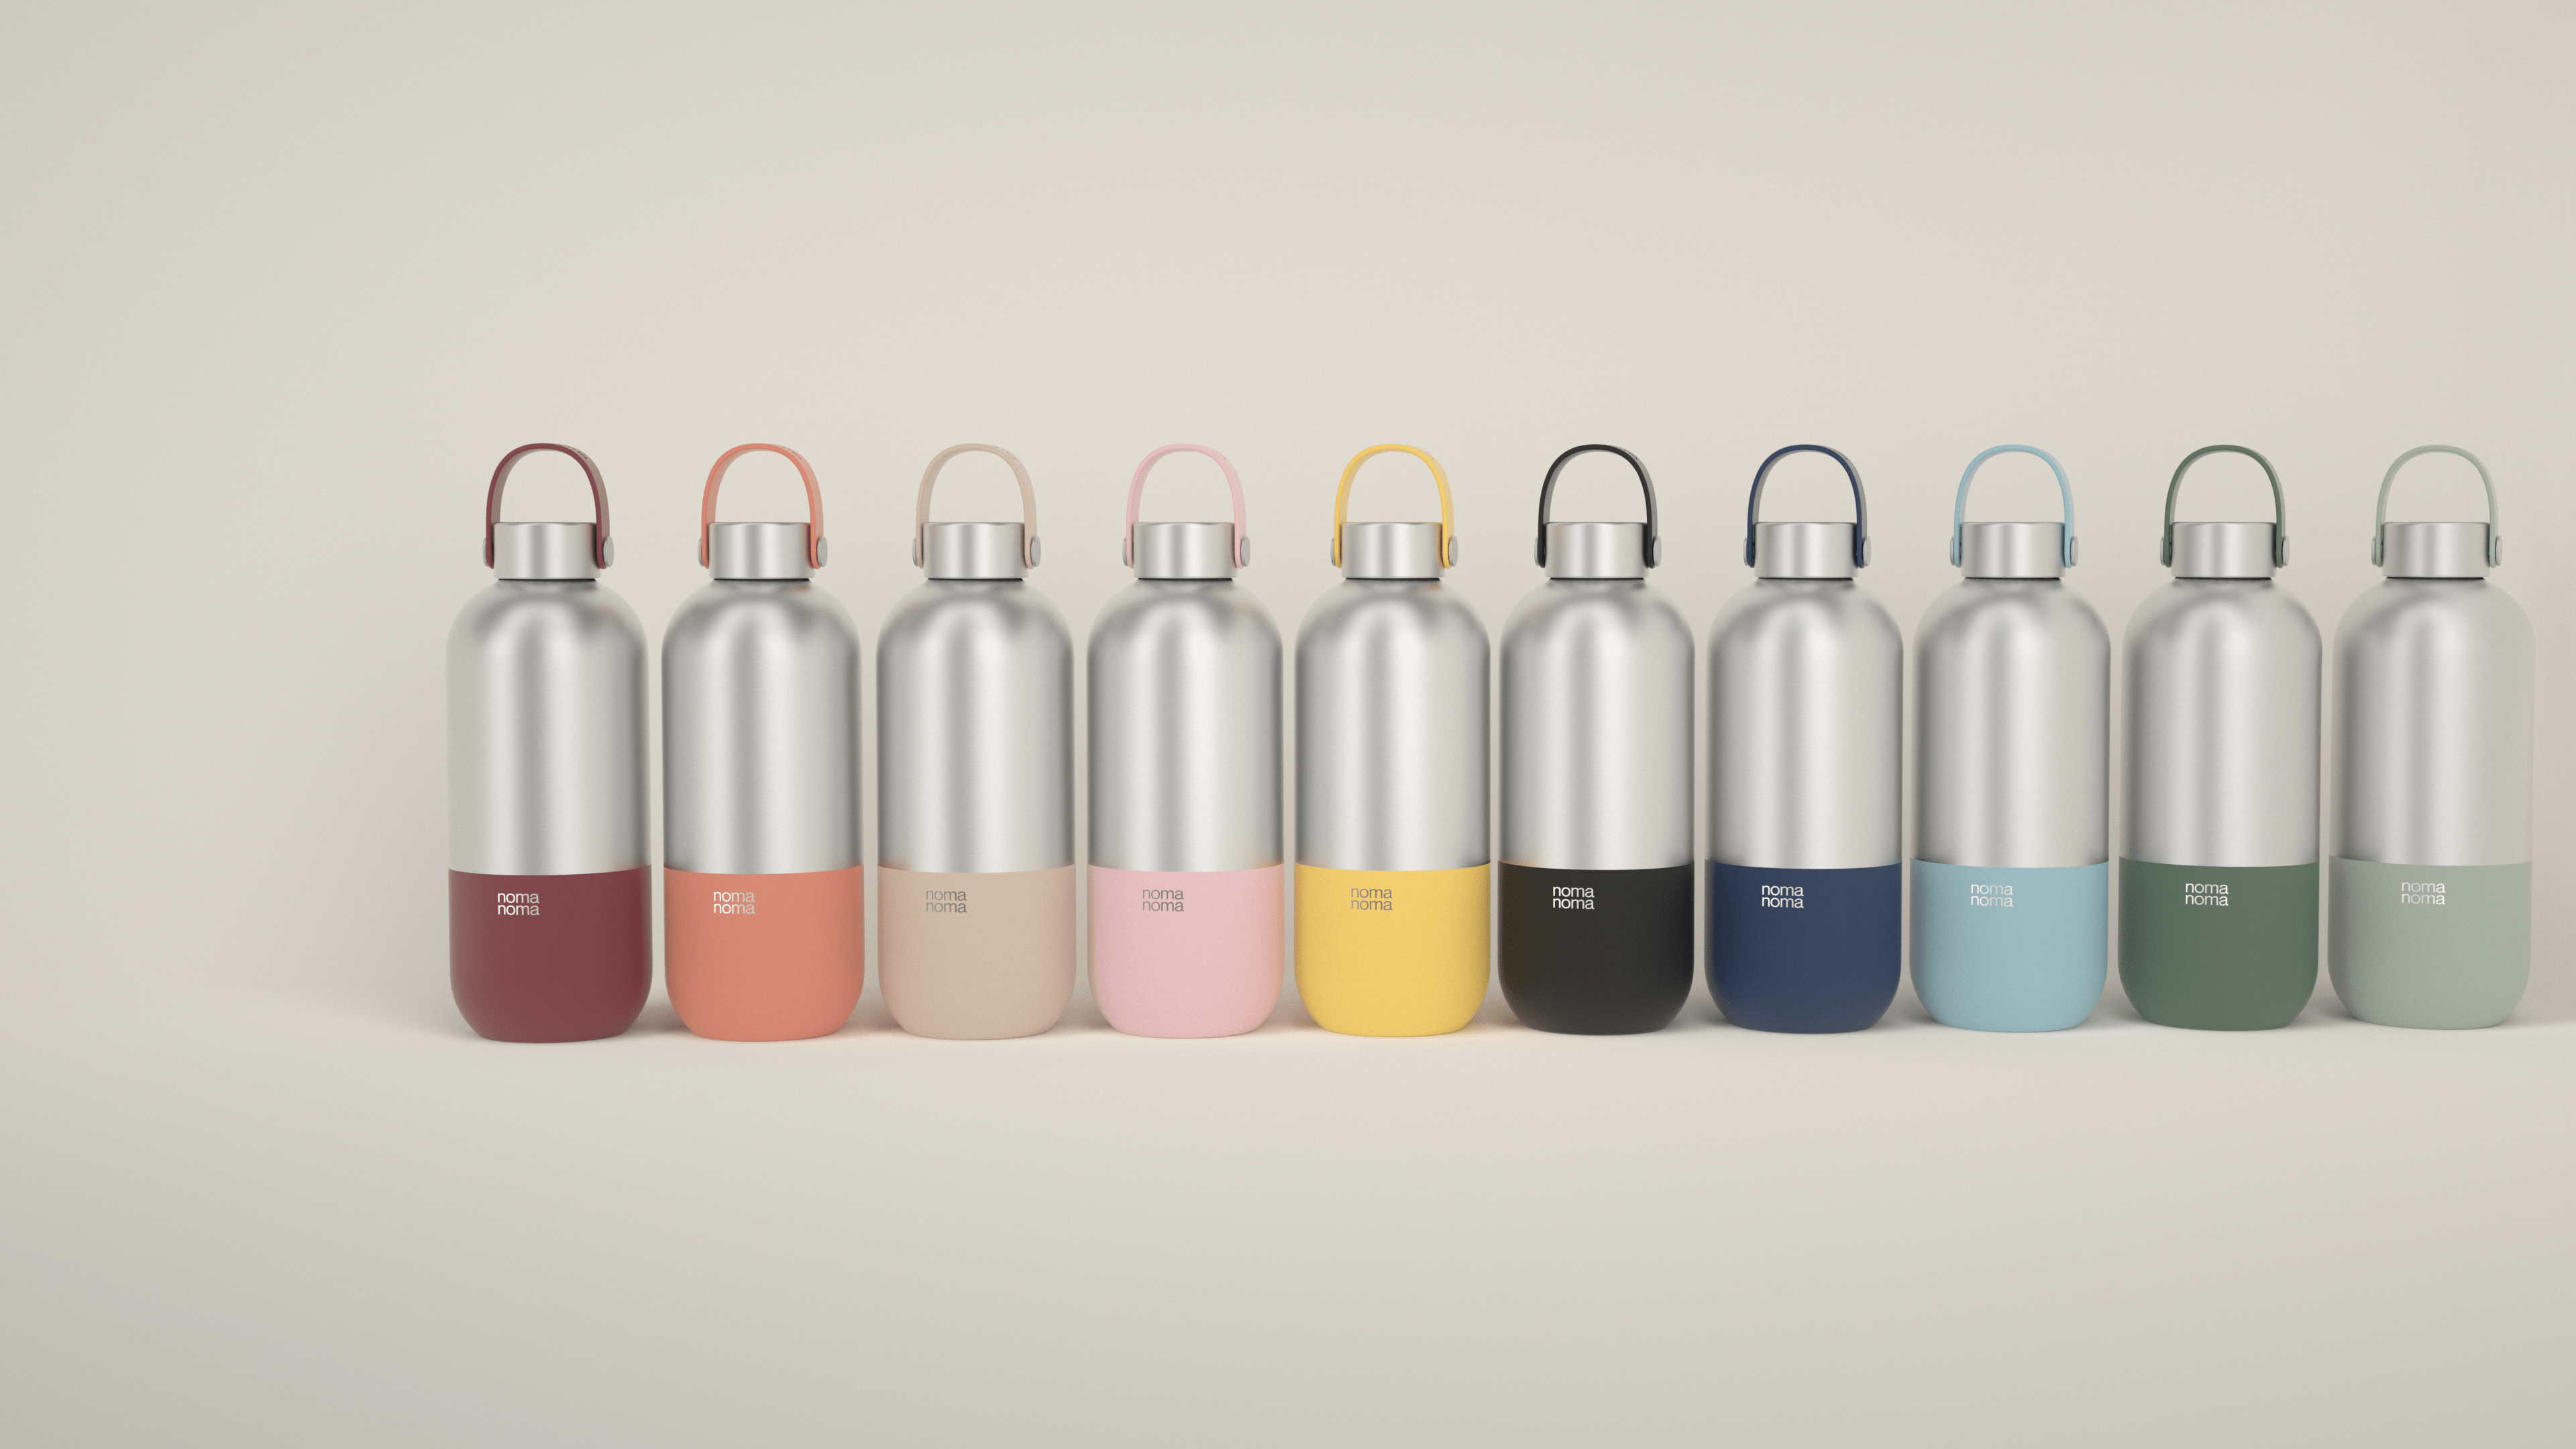 Wähle deine Trinkflasche aus der Produktvielfalt von noma noma.